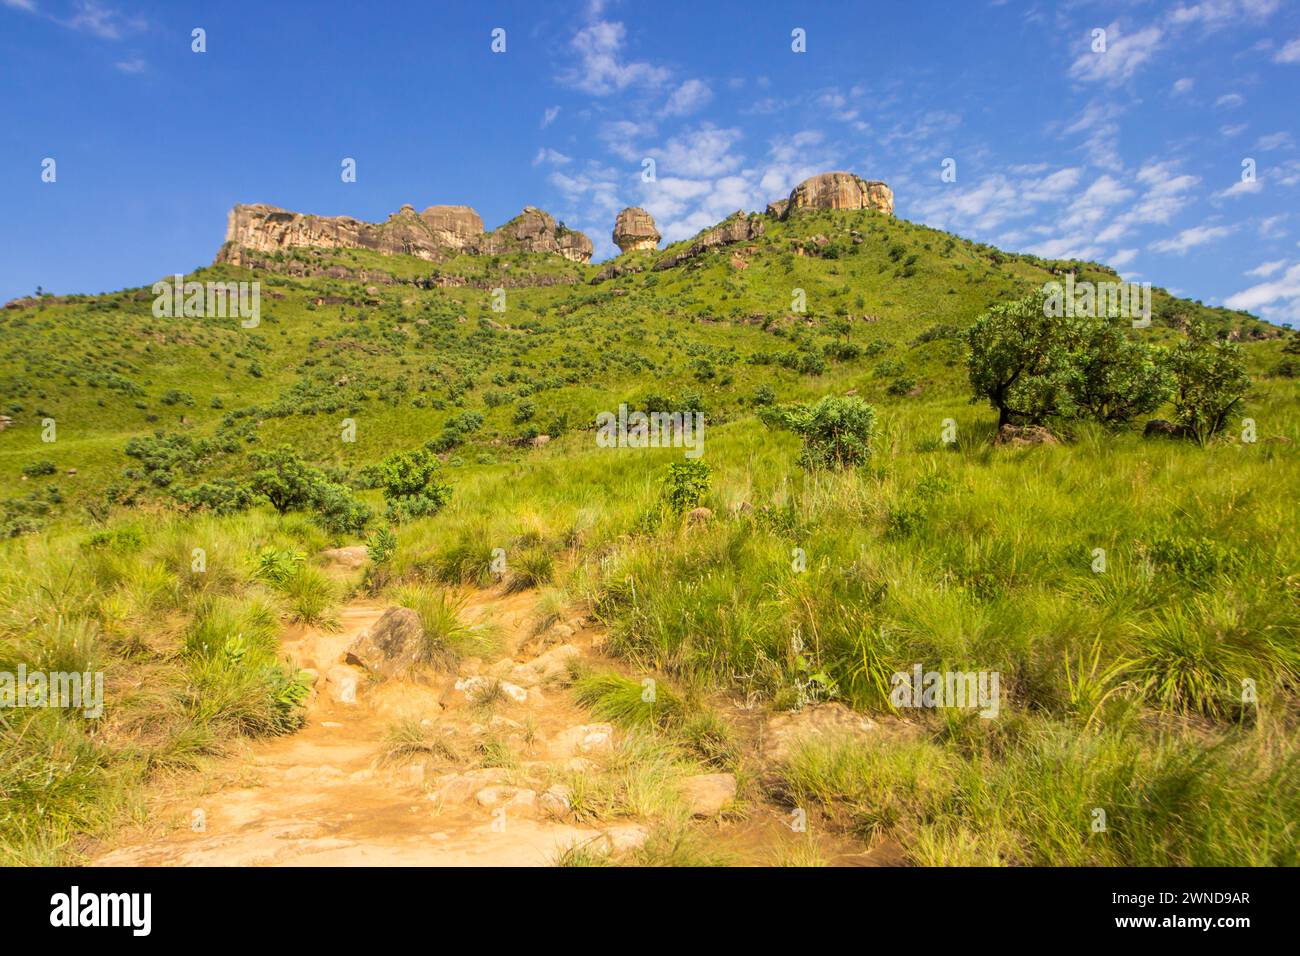 Wandern Sie durch das Grasland der Drakensberge mit bizarr verwitterten Sandsteinformationen und Klippen am Horizont. Stockfoto